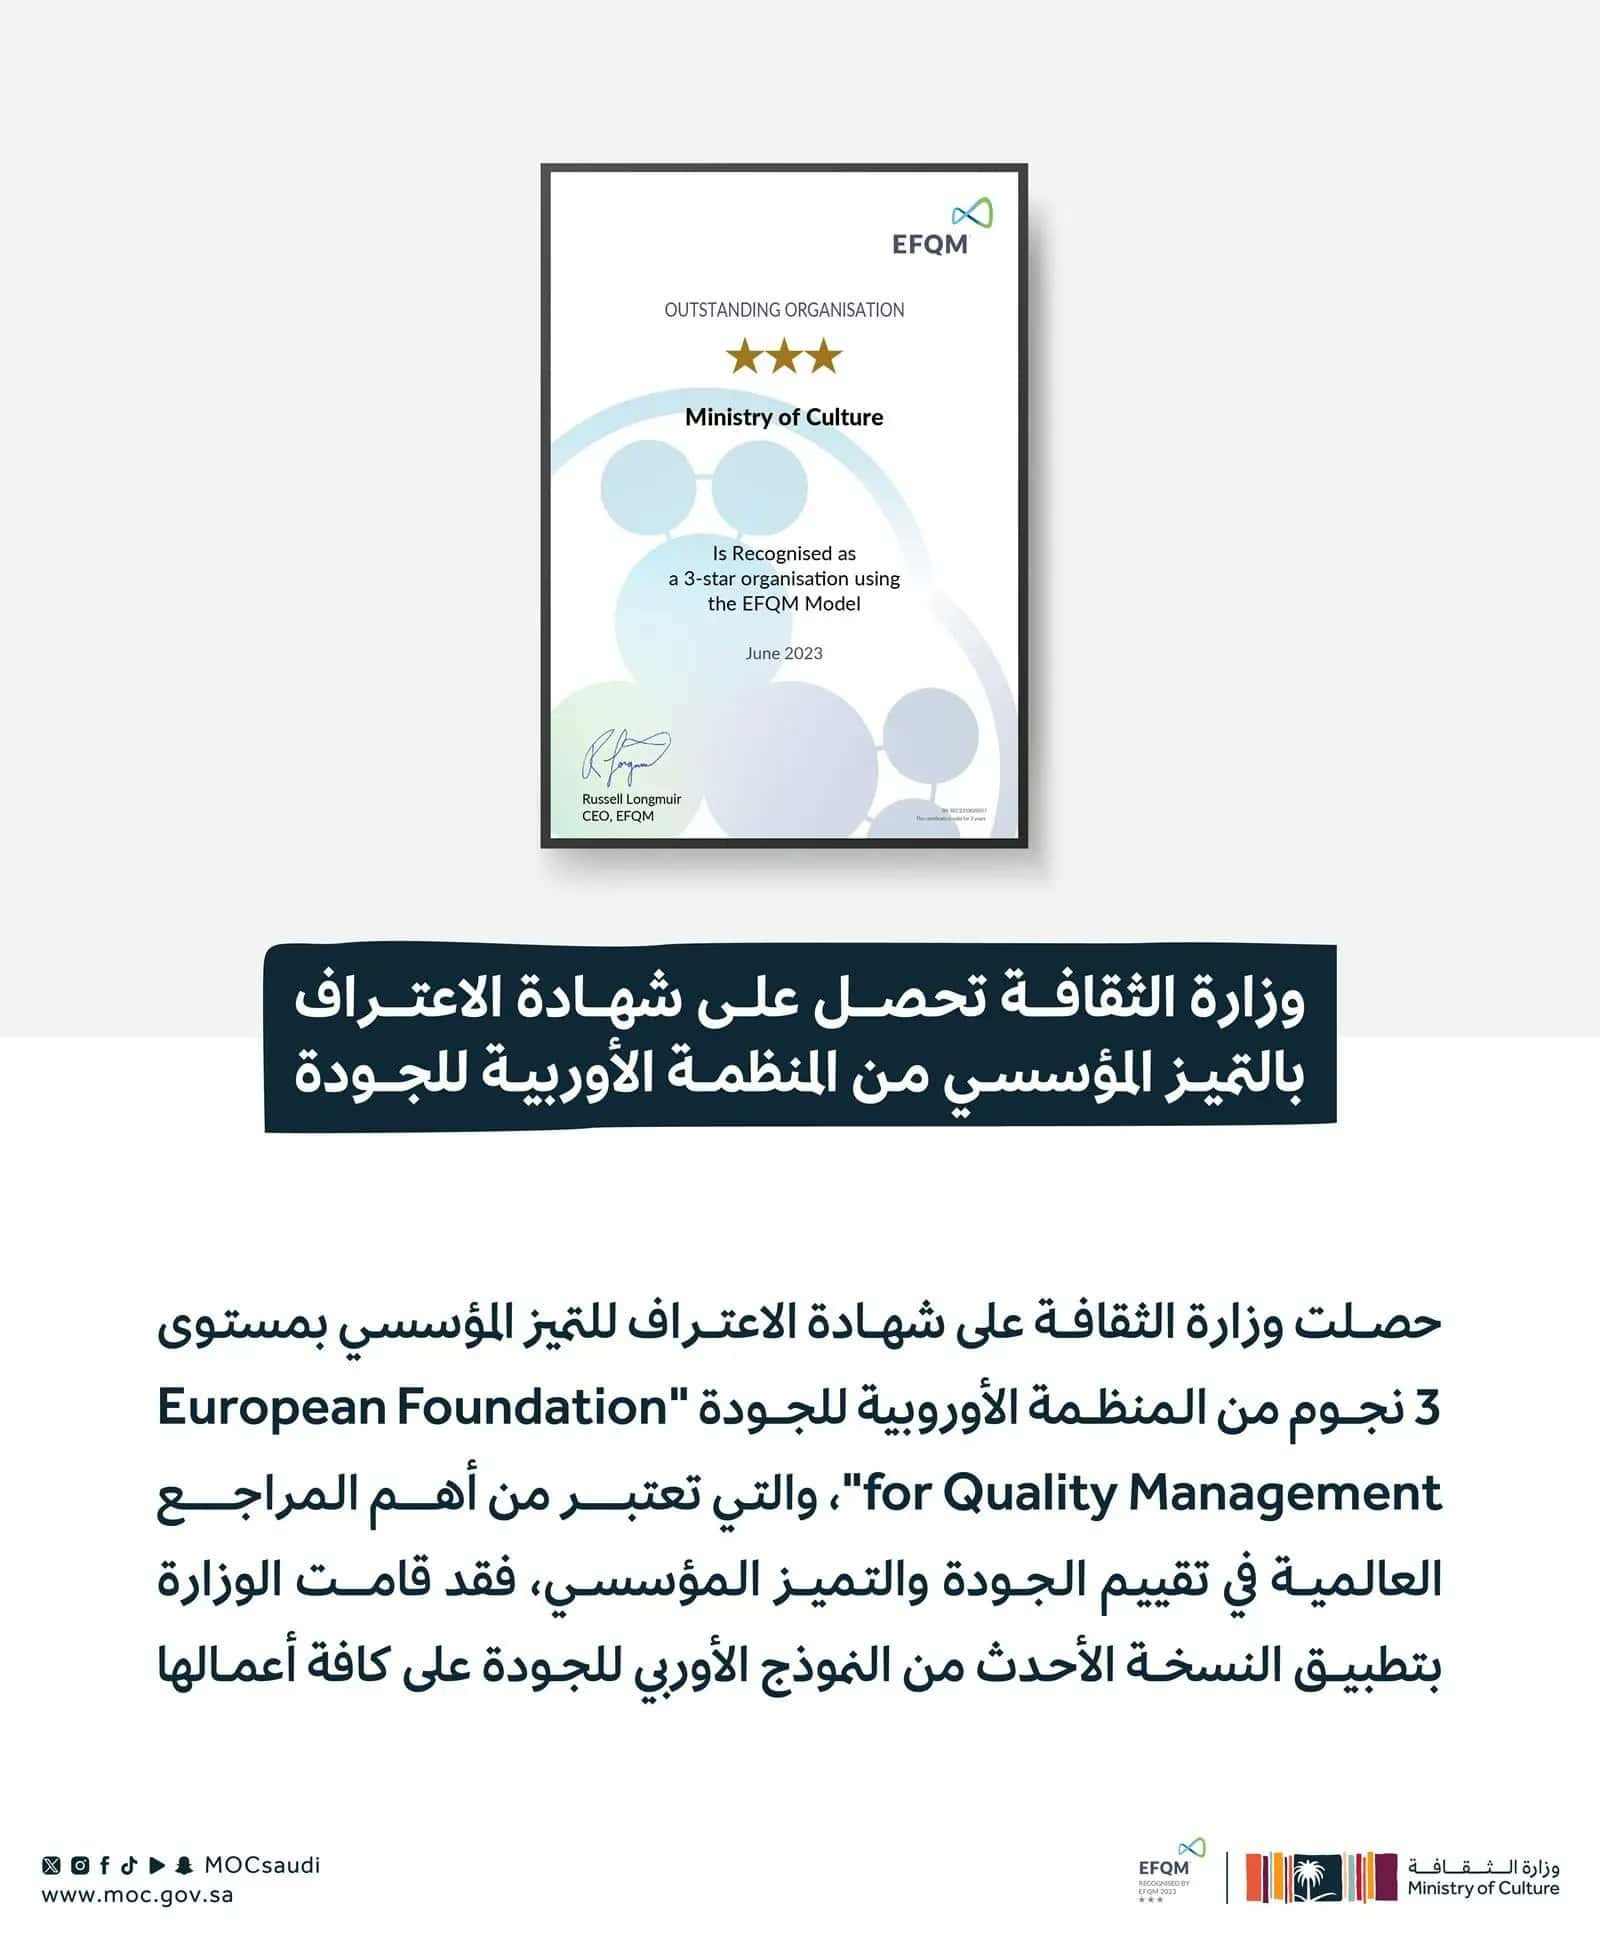 «وزارة الثقافة» تحصل على شهادة الاعتراف للتميز المؤسسي من المنظمة الأوروبية 